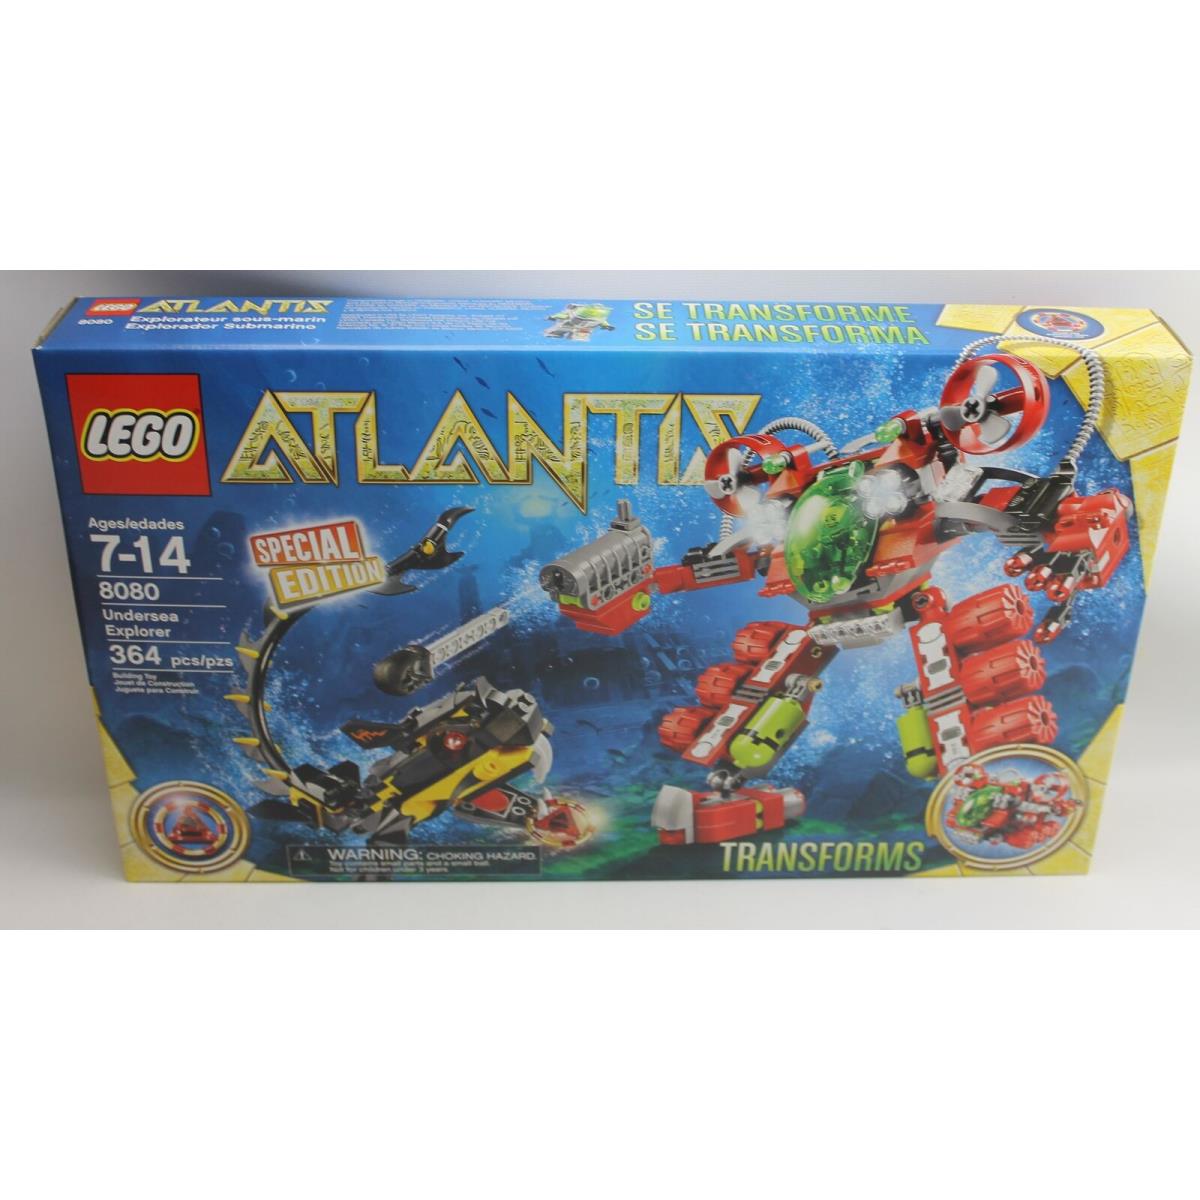 Lego 8080 Undersea Explorer Special Edition Atlantis Transforms Set